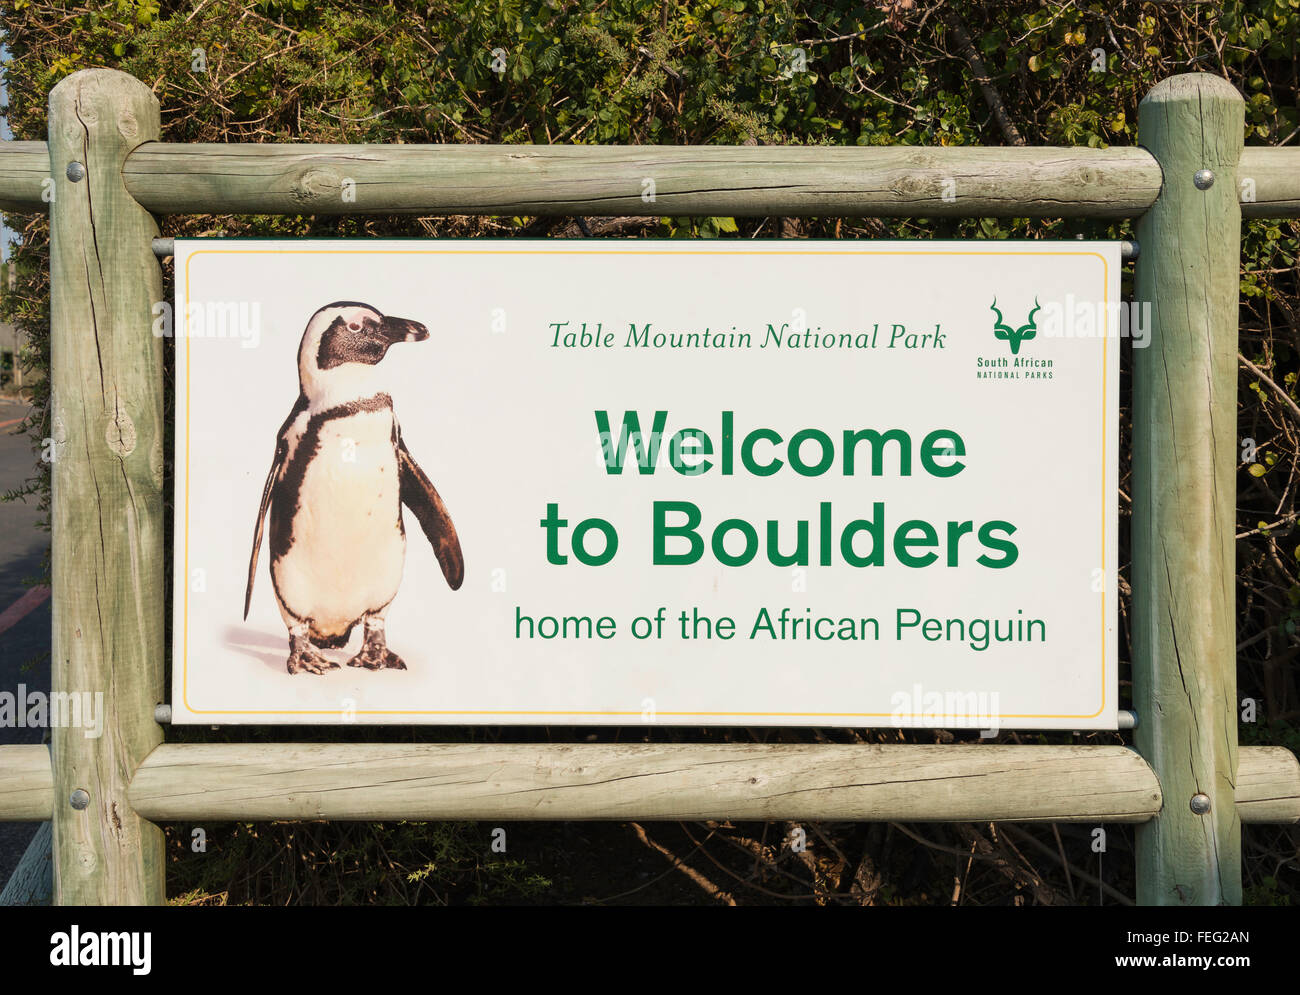 La plage de Boulders penguin signe, Simon's Town, péninsule du Cap, ville du Cap, dans l'ouest de la municipalité de la Province du Cap, Afrique du Sud Banque D'Images